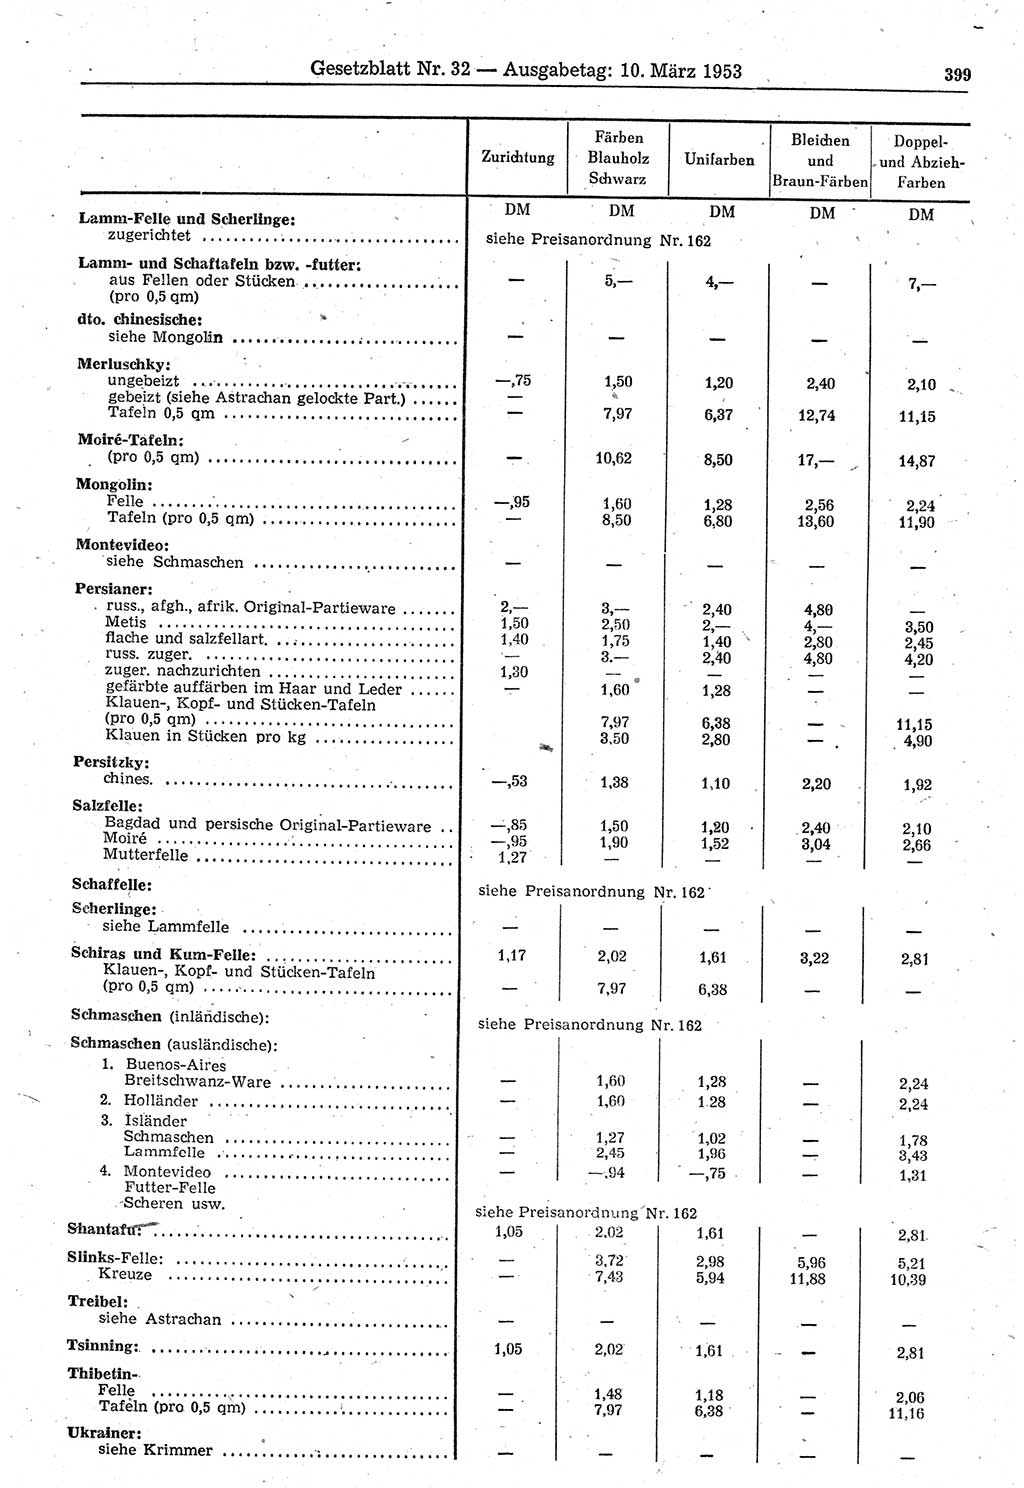 Gesetzblatt (GBl.) der Deutschen Demokratischen Republik (DDR) 1953, Seite 399 (GBl. DDR 1953, S. 399)